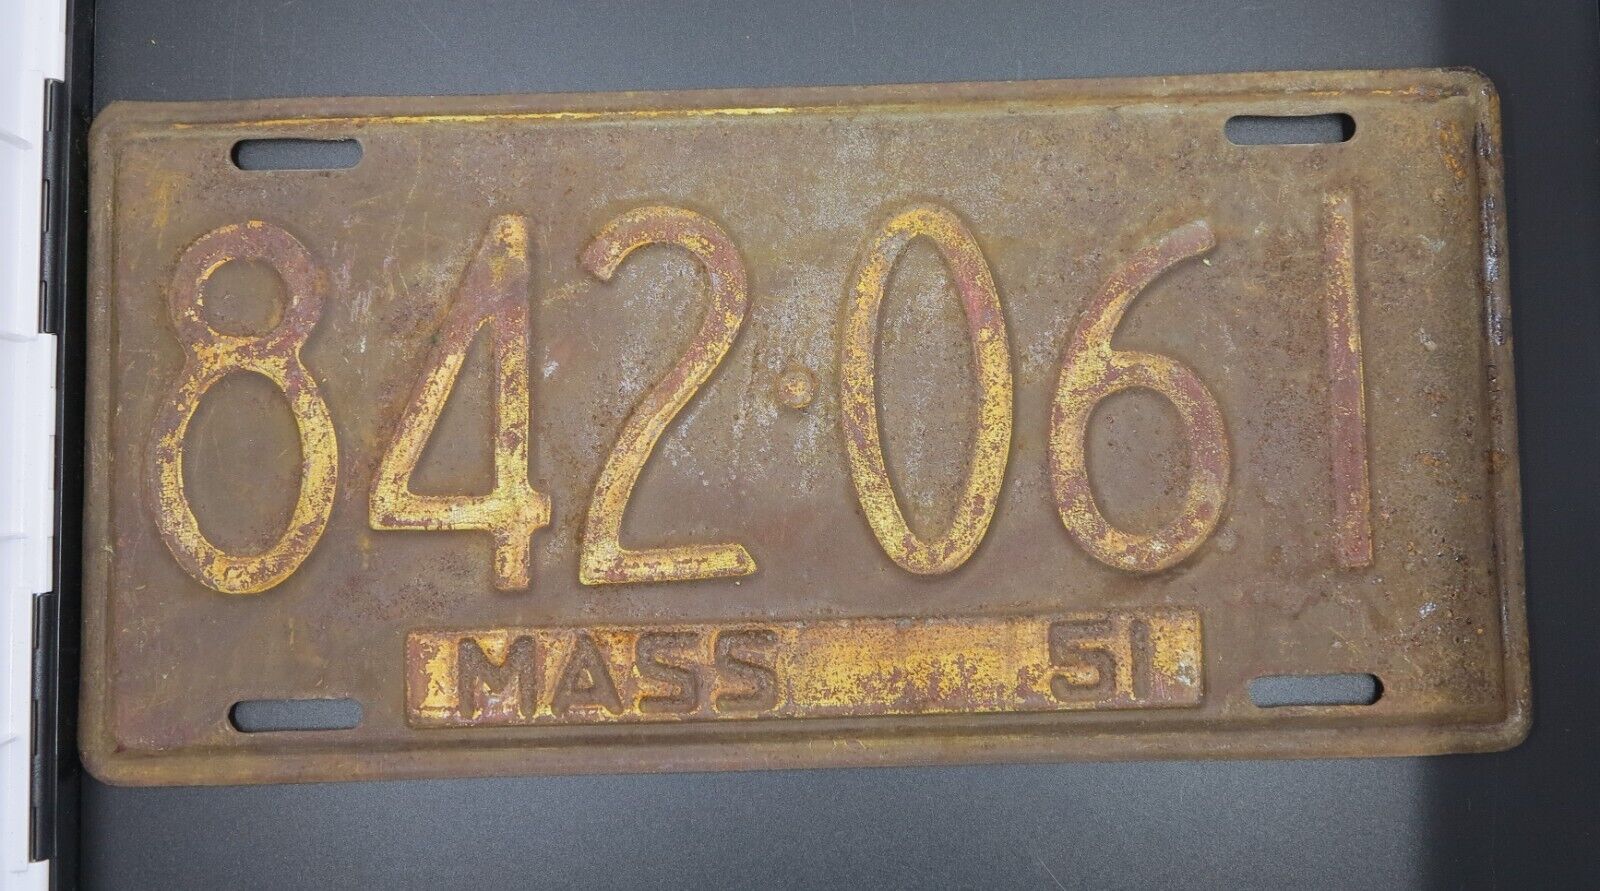 1951 Massachusetts License Plate 842-061